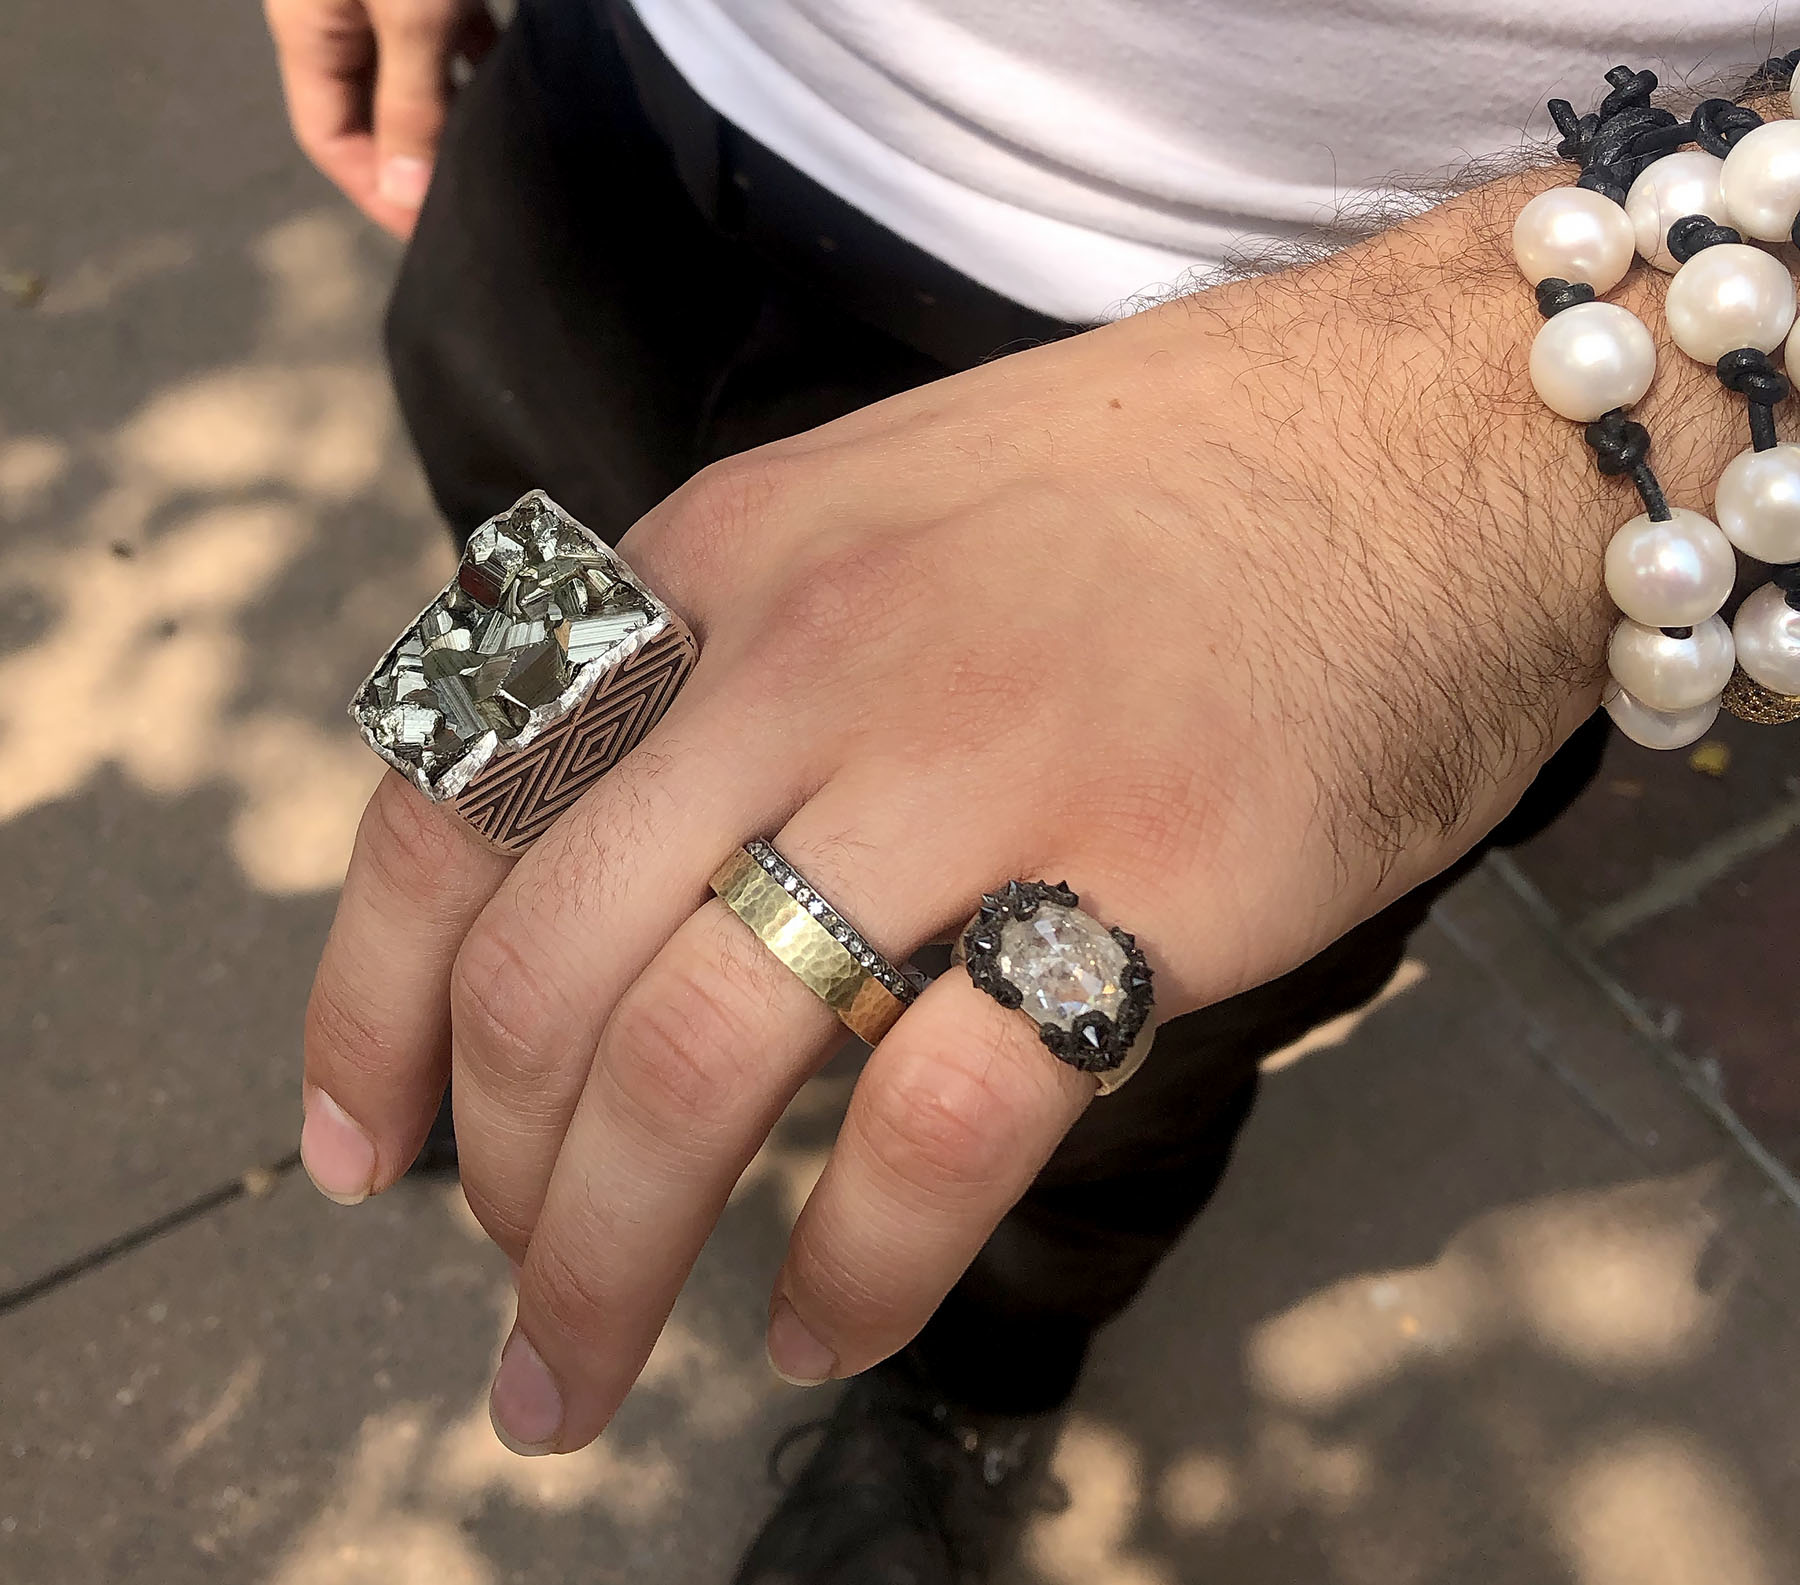  Silver - Men's Rings / Men's Jewellery: Jewellery